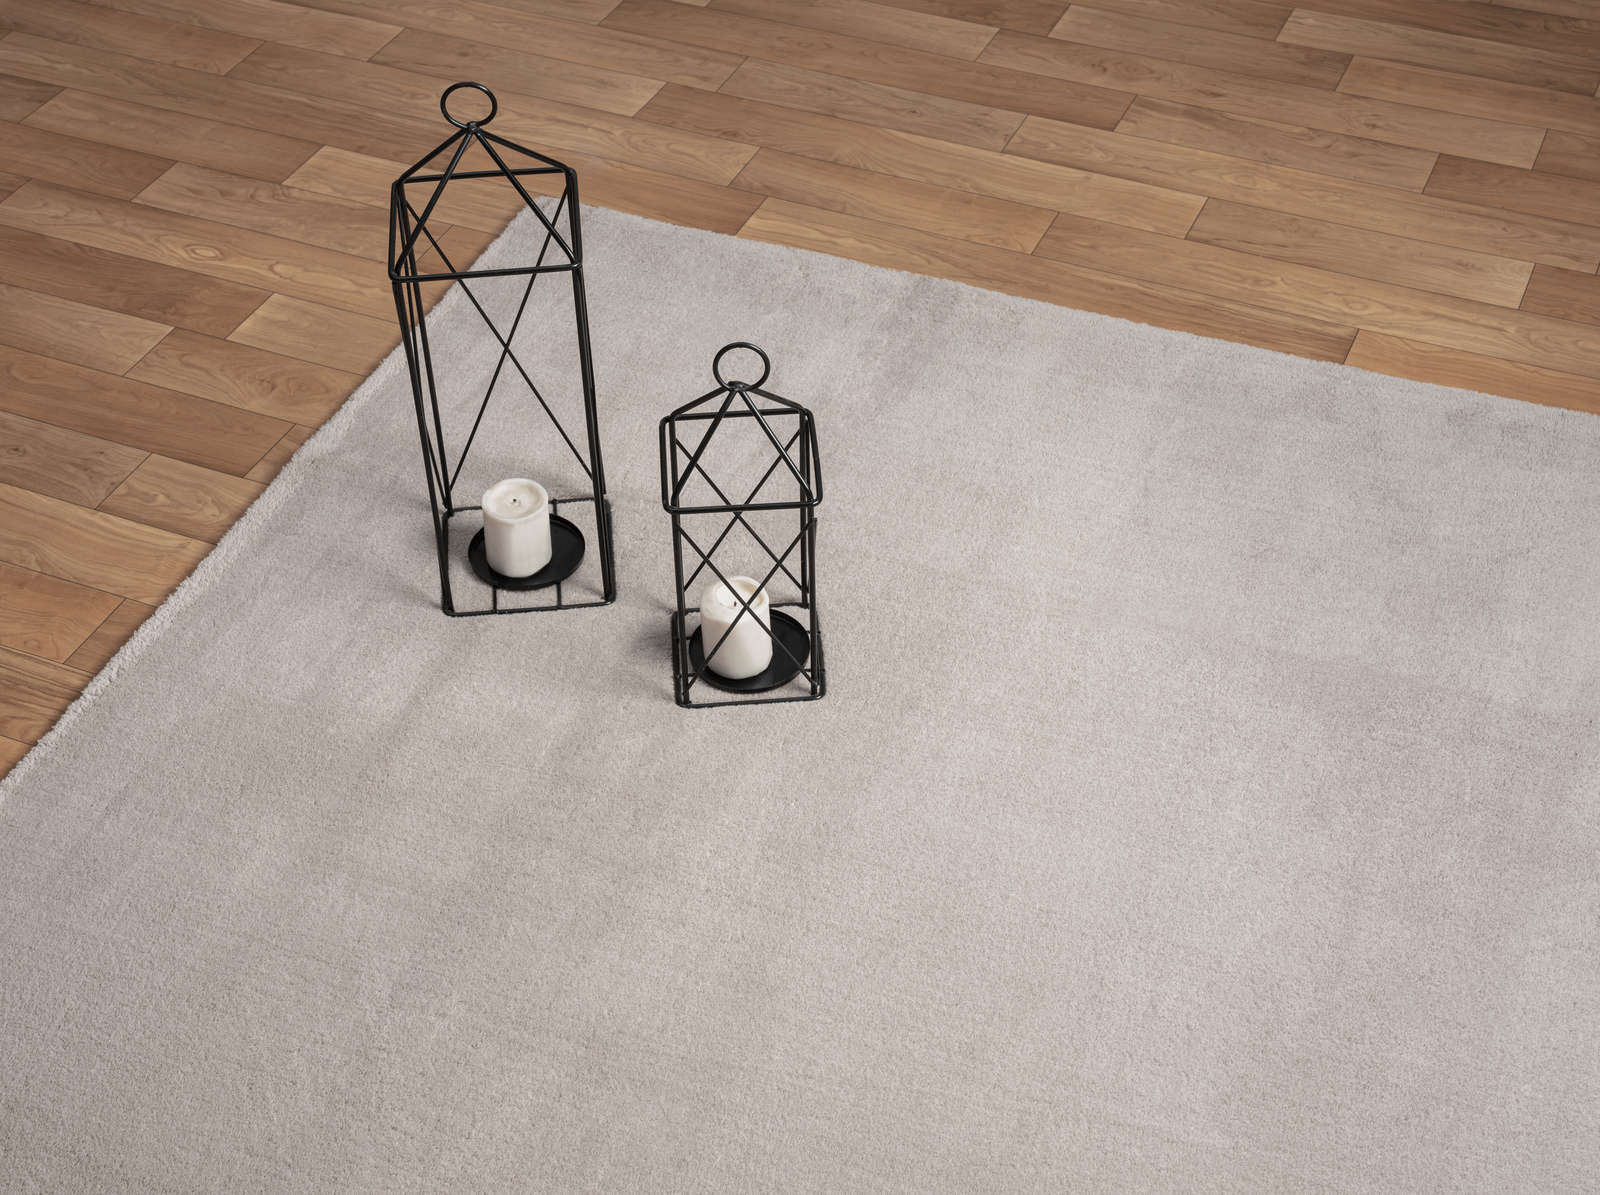             Modischer Hochflor Teppich in Sand – 340 x 240 cm
        